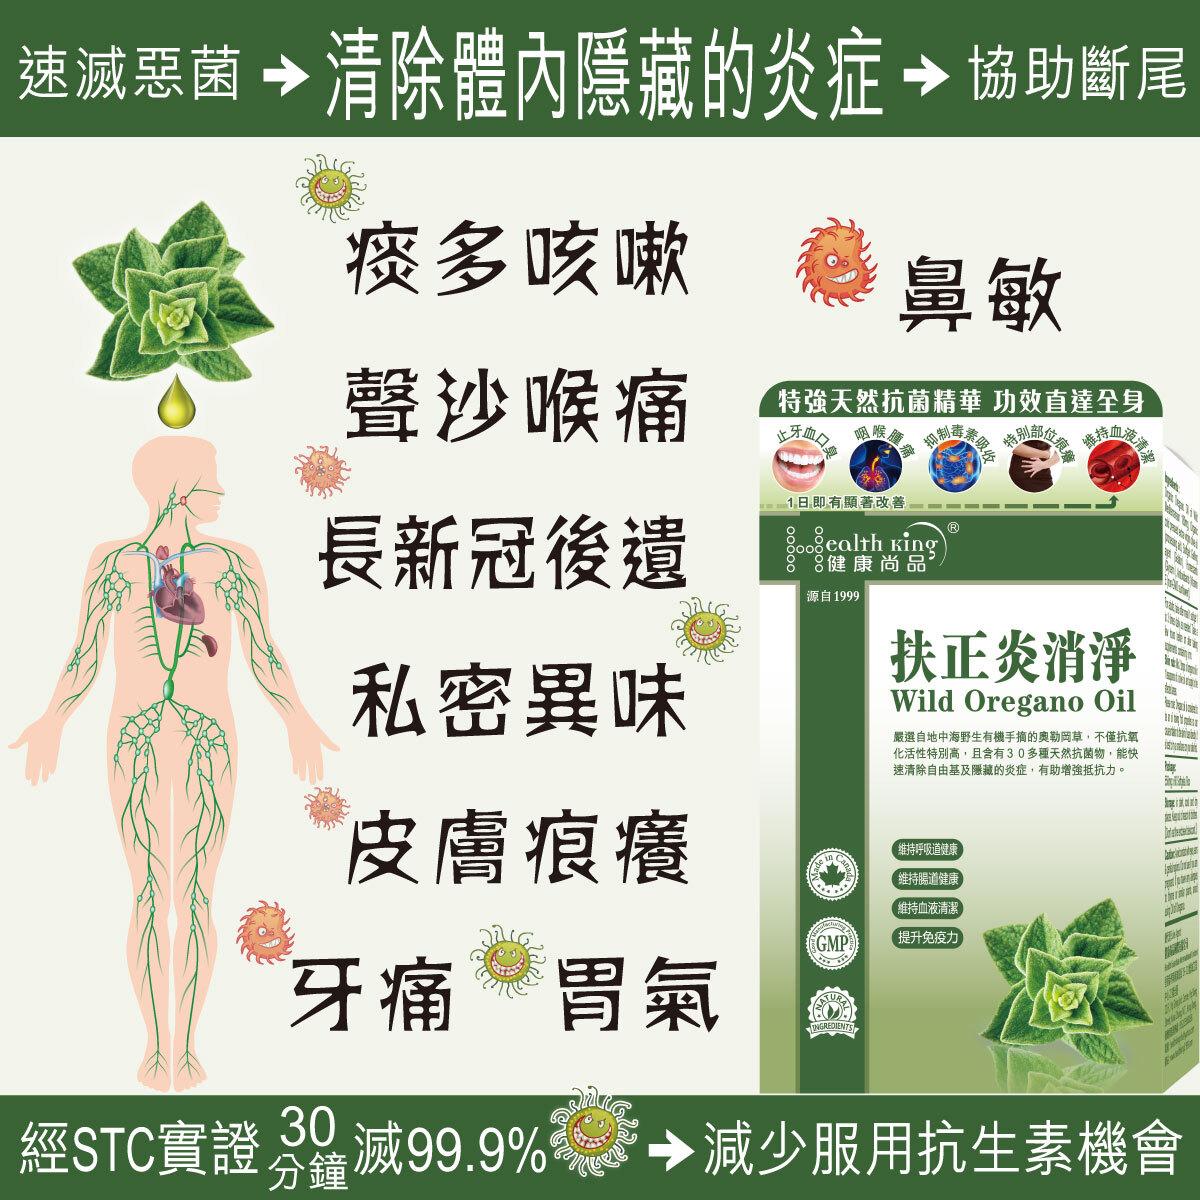 健康尚品| 扶正炎消淨--最佳食用期至2026年3月| HKTVmall 香港最大網購平台